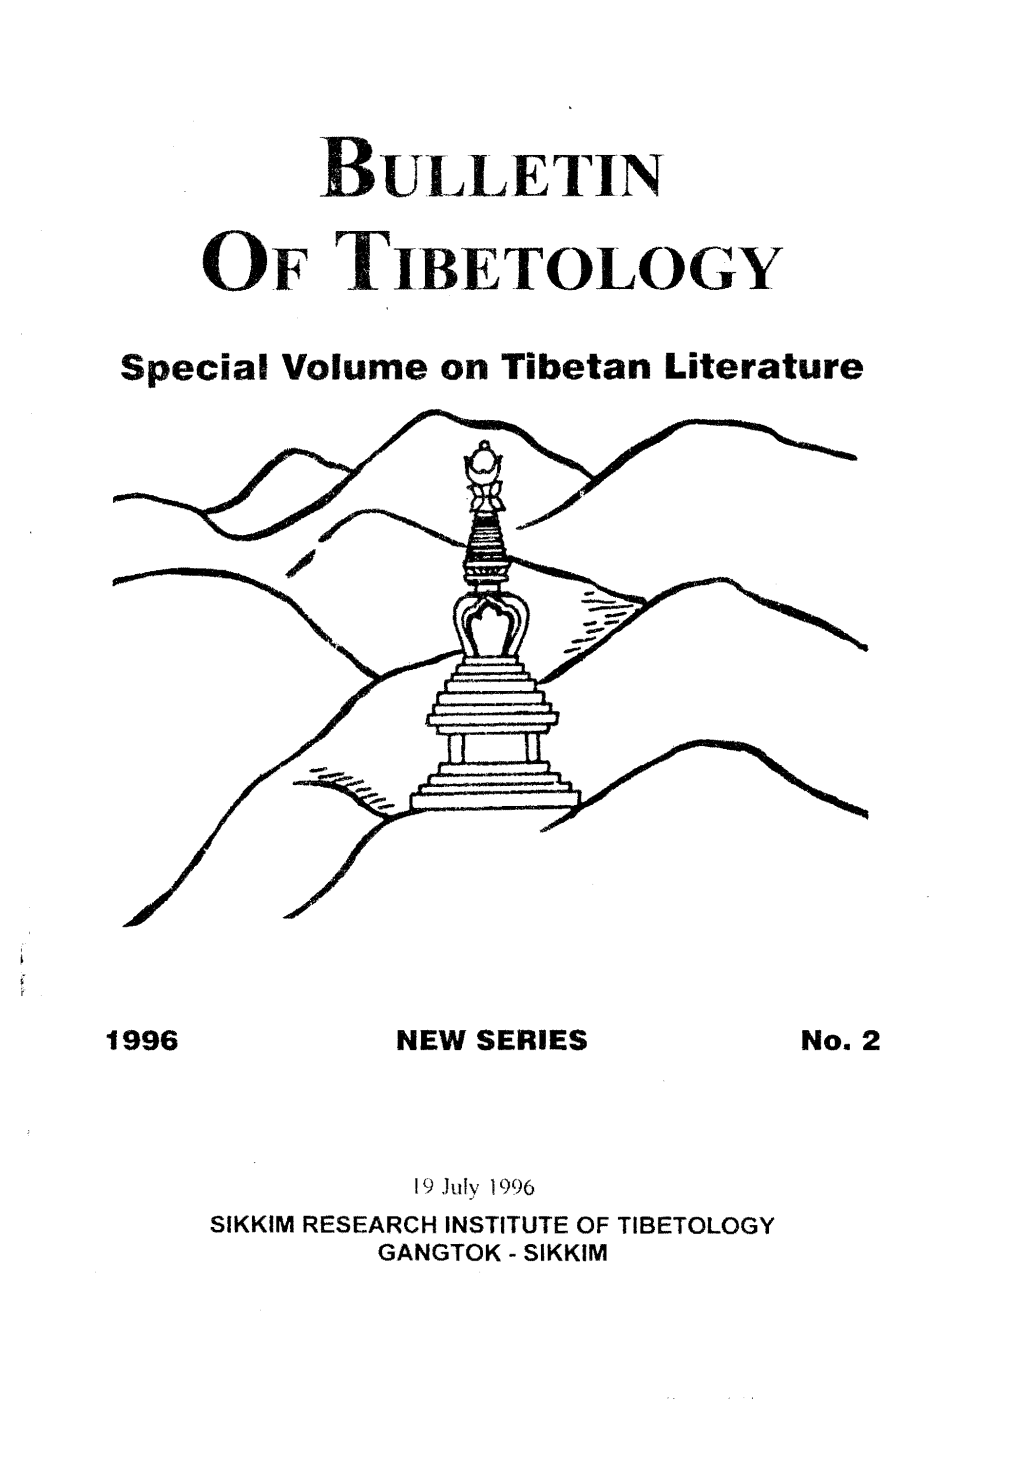 Of Tibetology